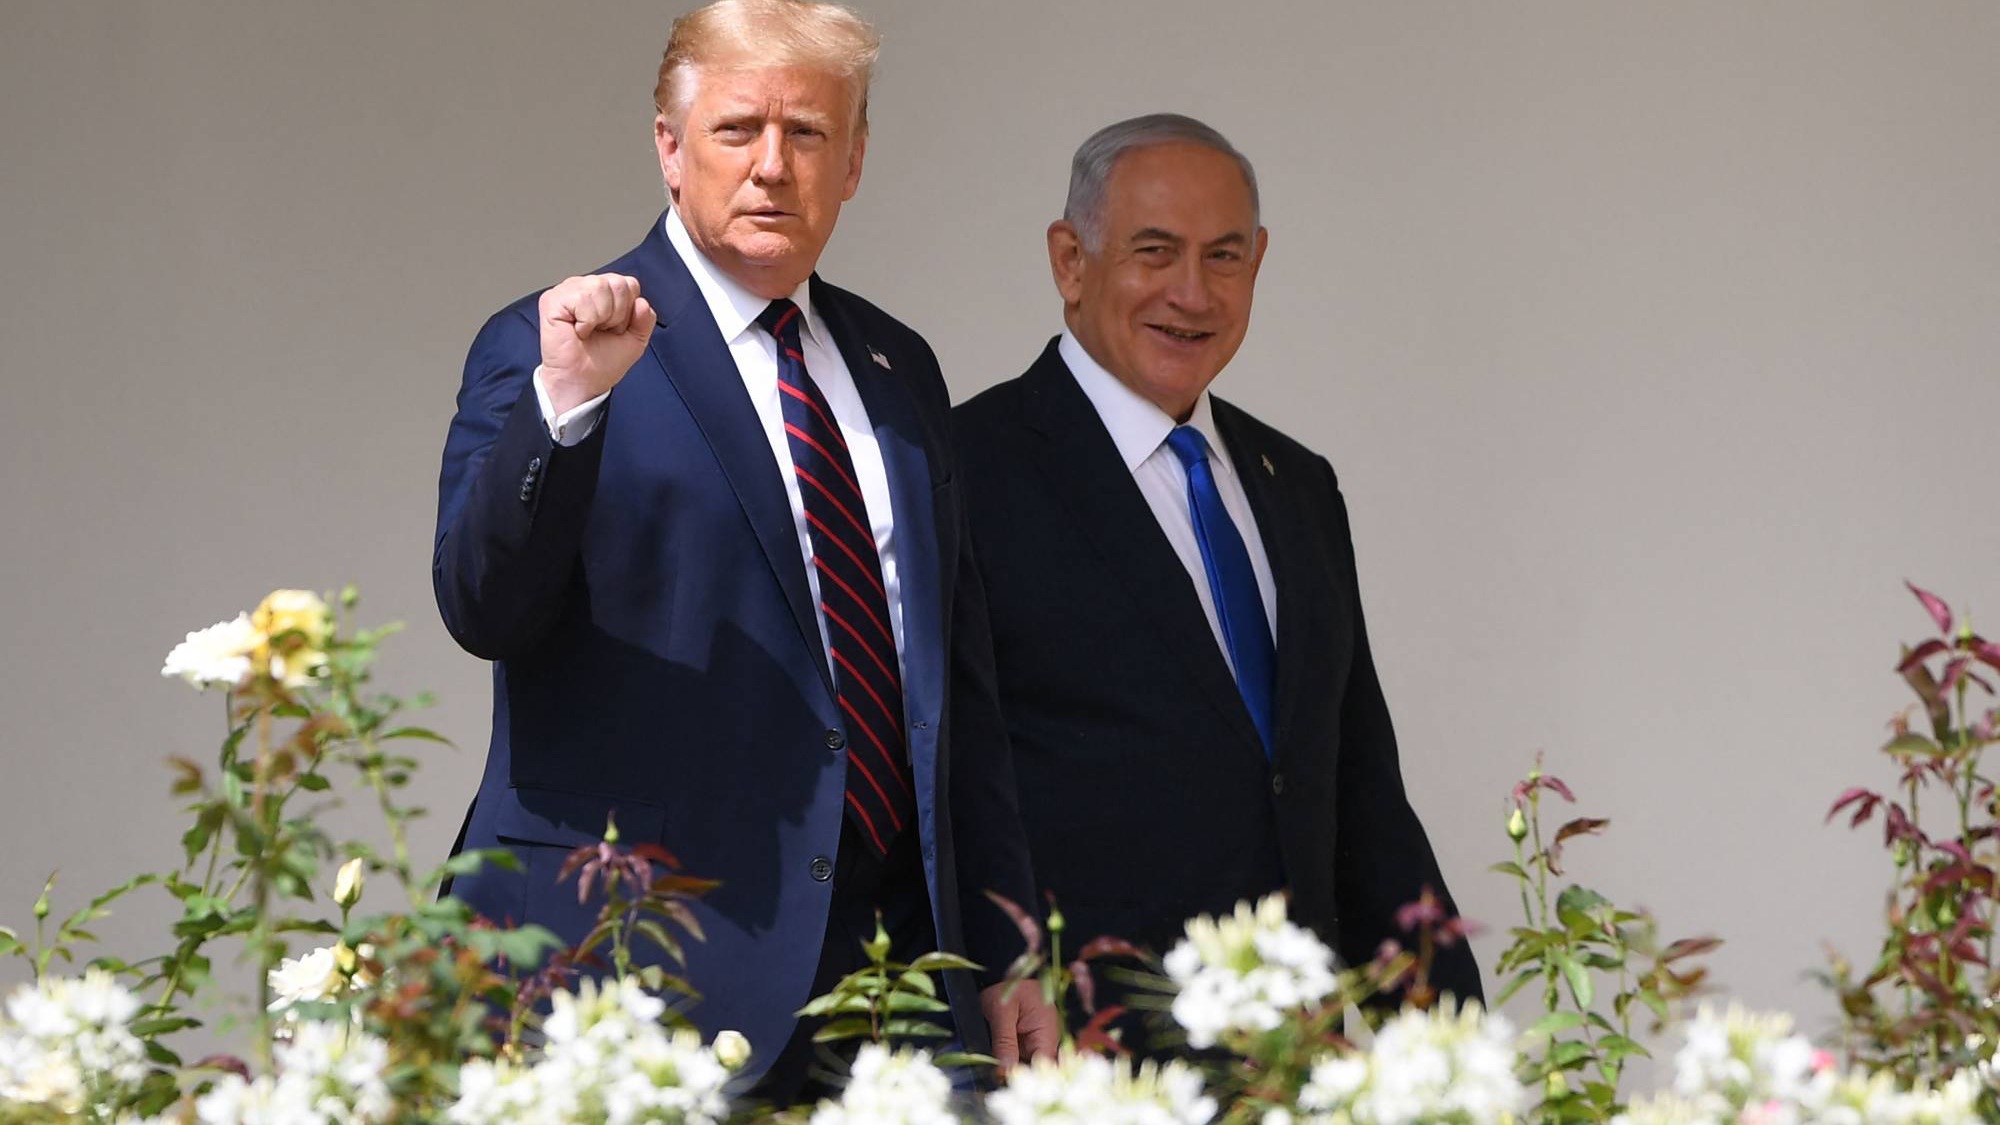 ترامب برفقة رئيس الوزراء الإسرائيلي بنيامين نتانياهو في الحديقة الجنوبية للبيت الأبيض في واشنطن أيلول (سبتمبر) 2020